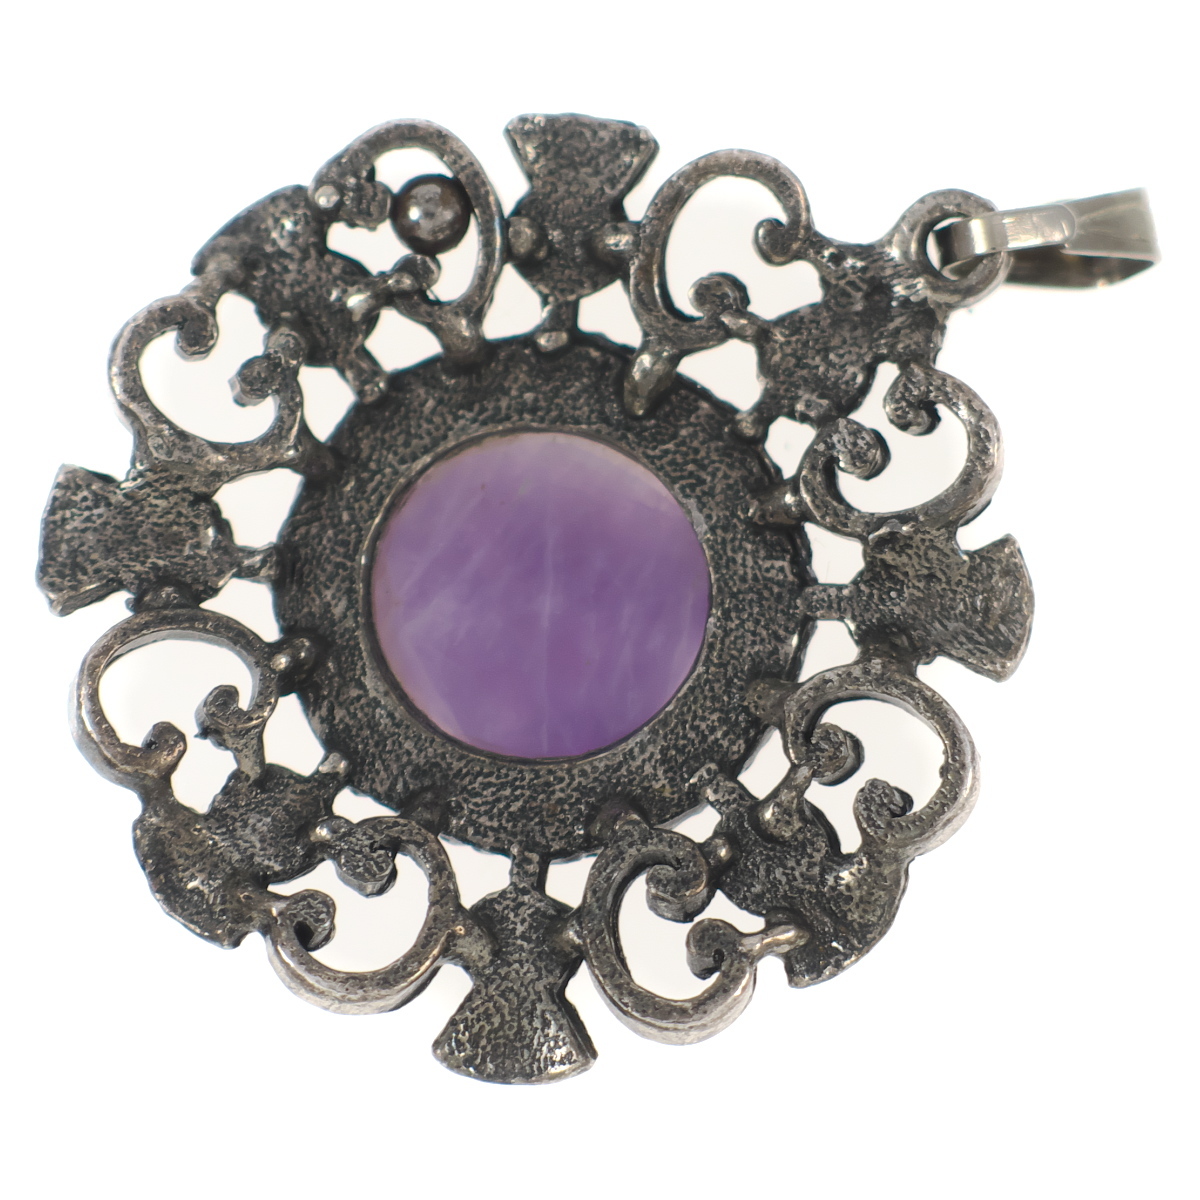 UK1406* amethyst color kaboshon color stone a The mi. flower flower motif Celt Britain * Vintage pendant top necklace .